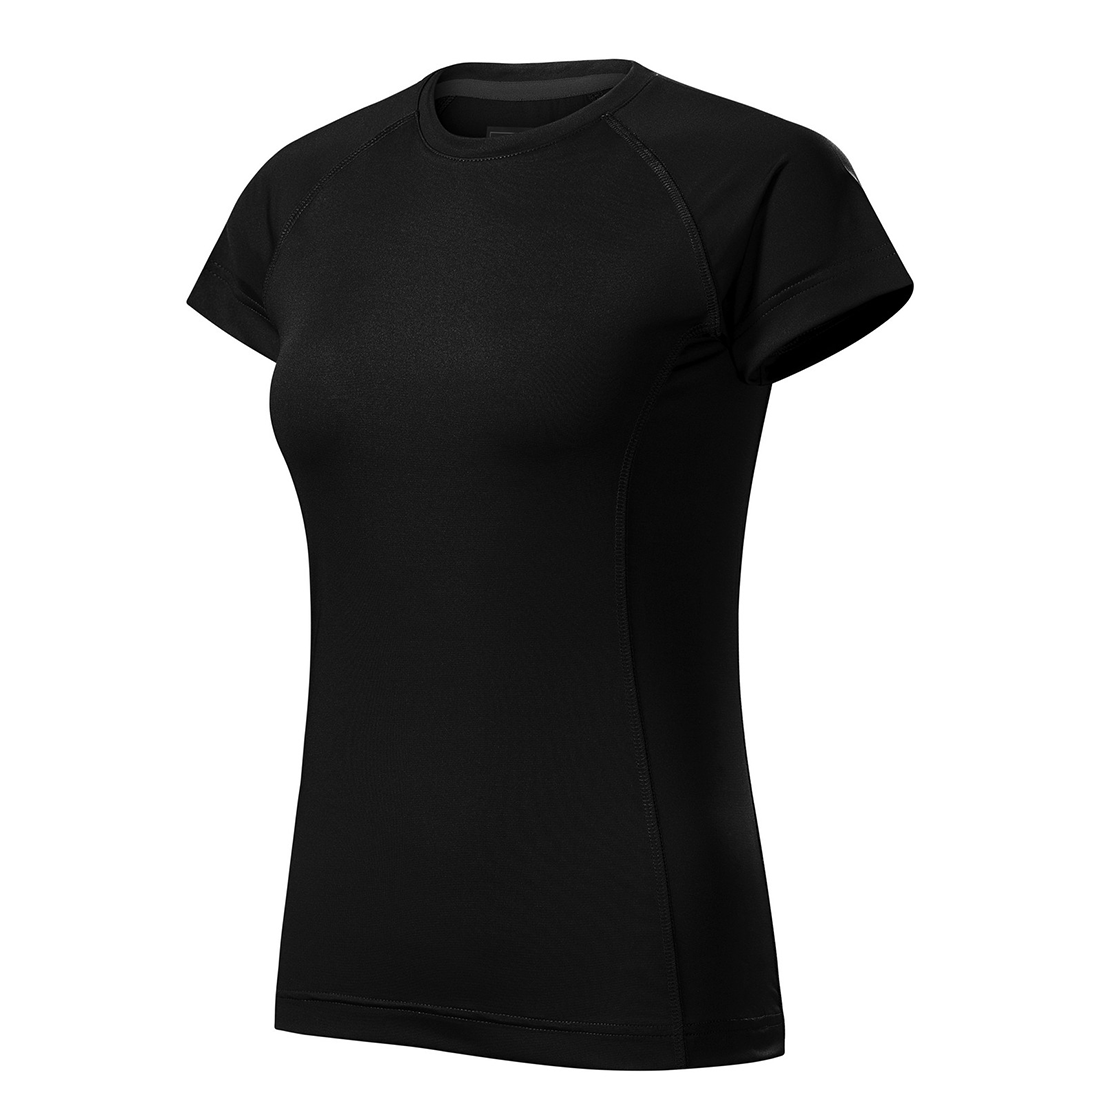 Tee-shirt femme DESTINY - Les vêtements de protection